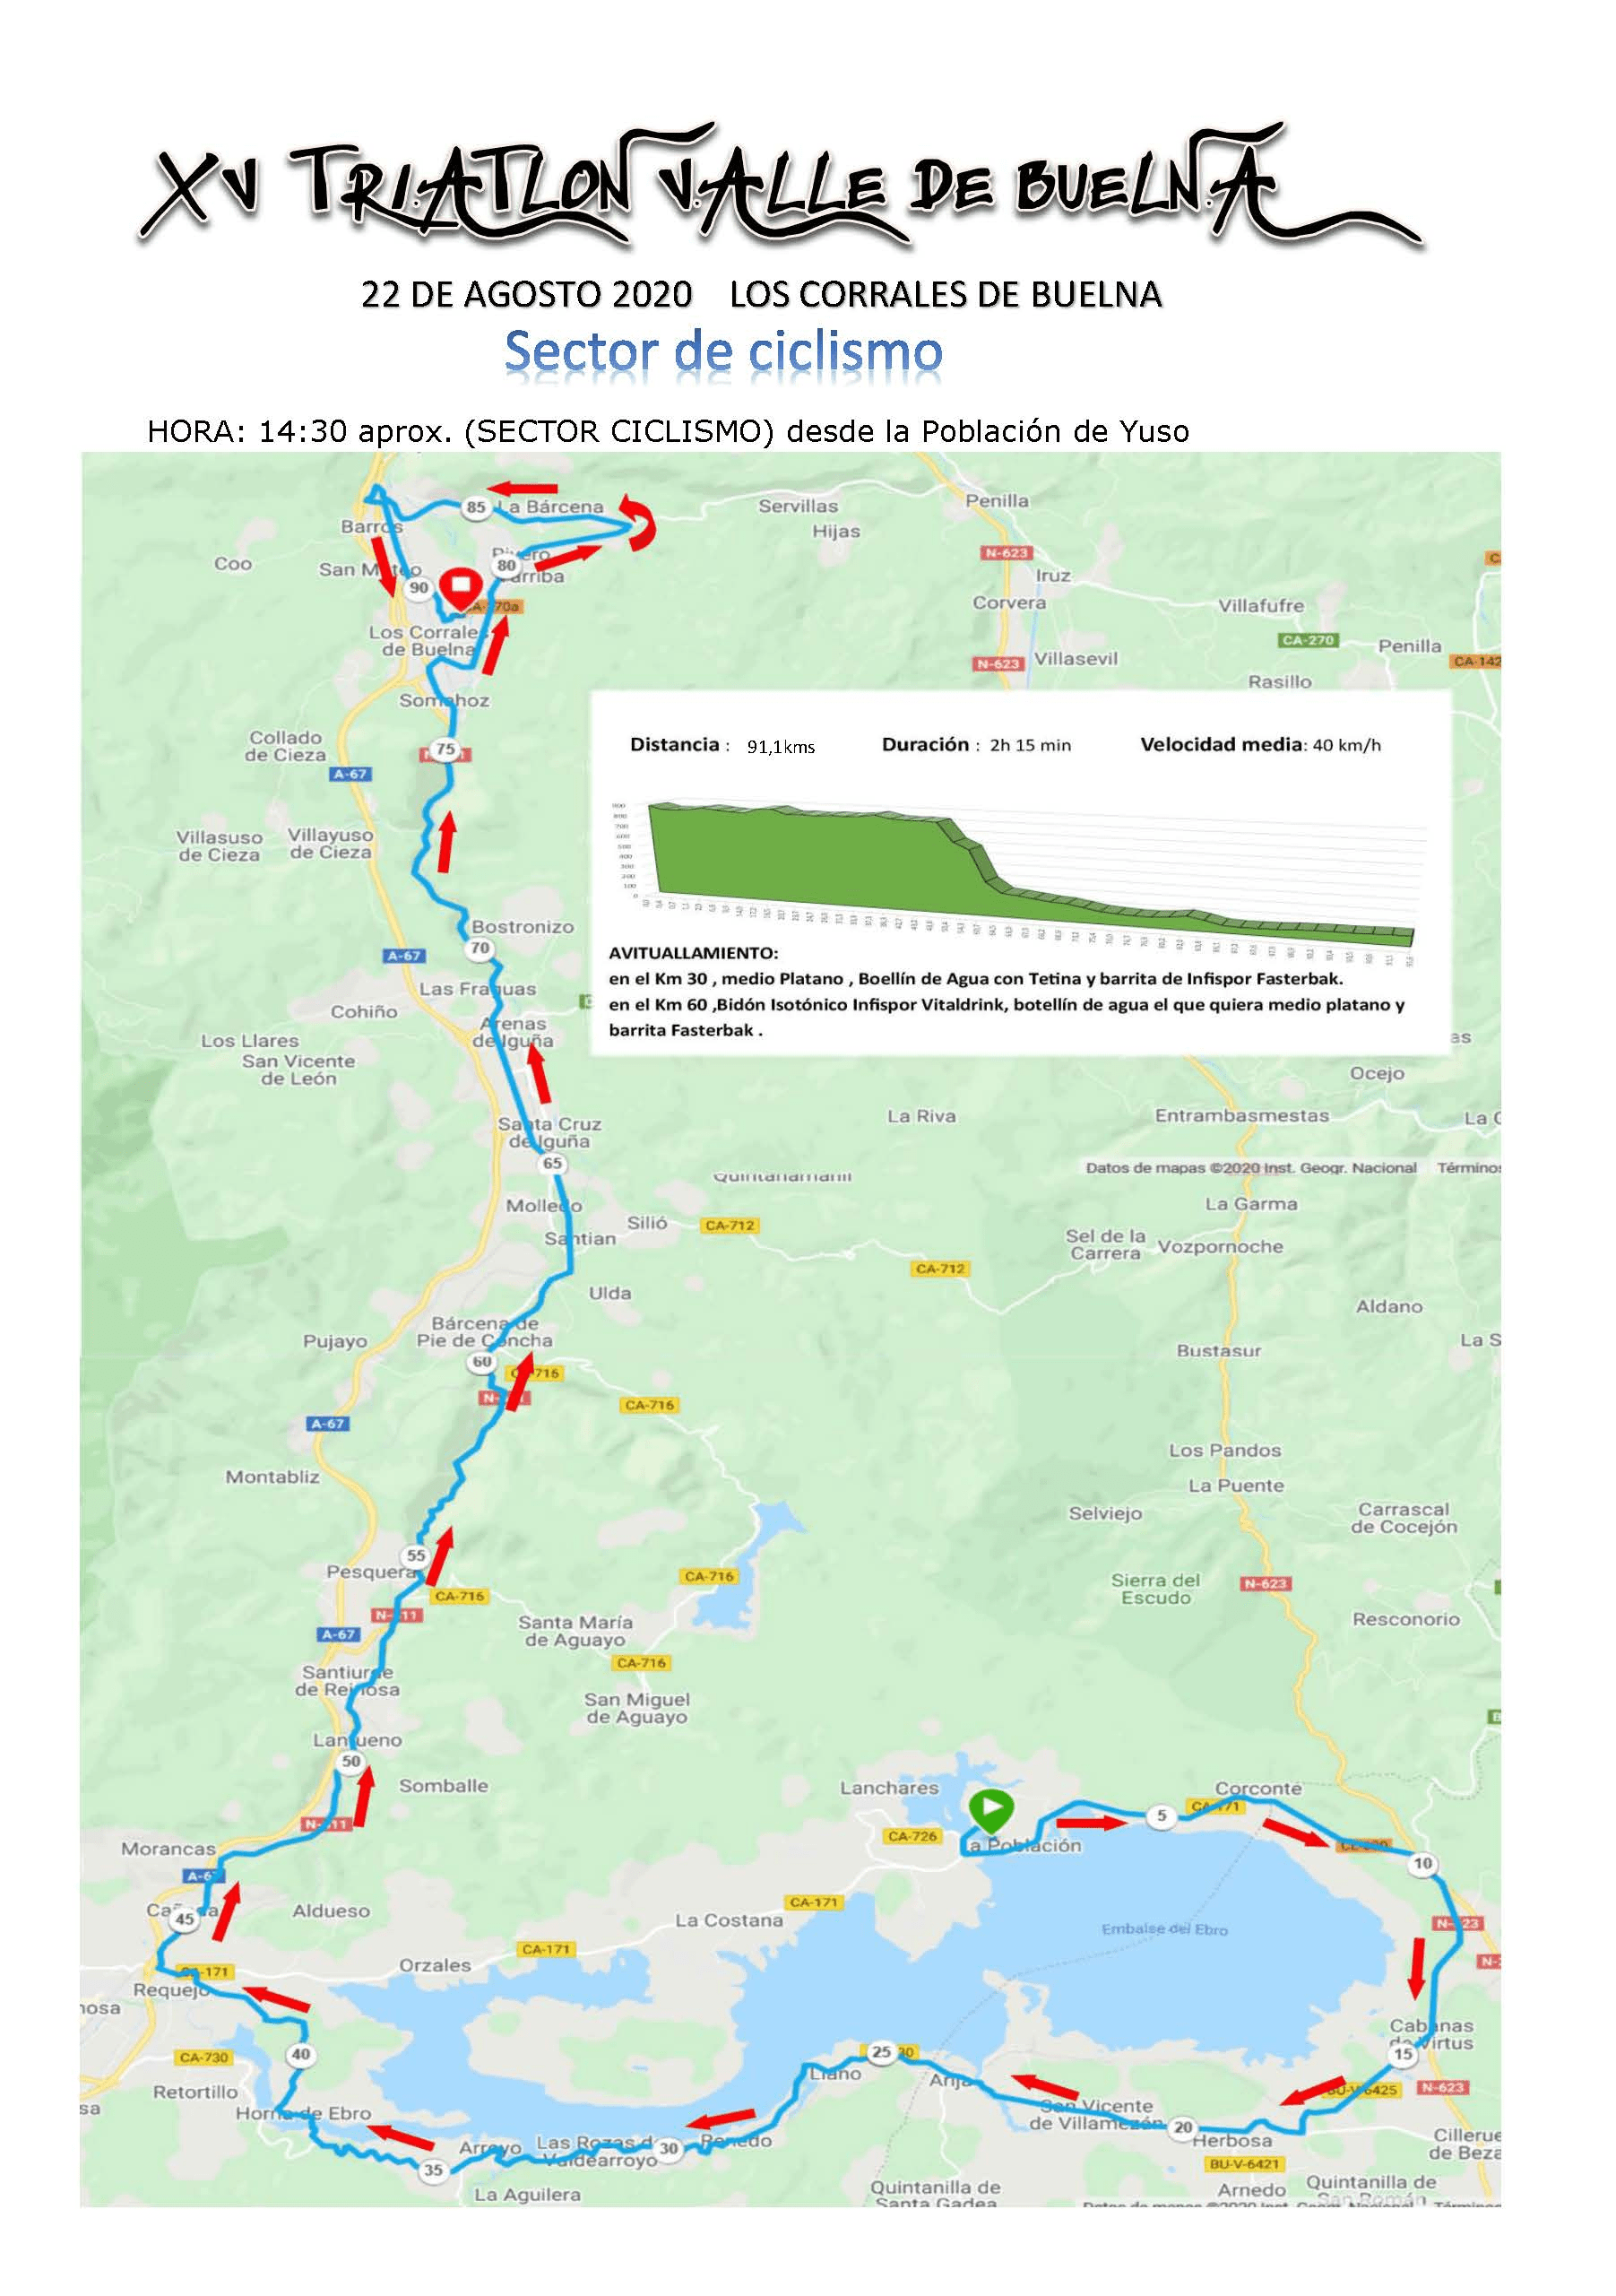 Segmento ciclista Triatlón Valle de Buelna